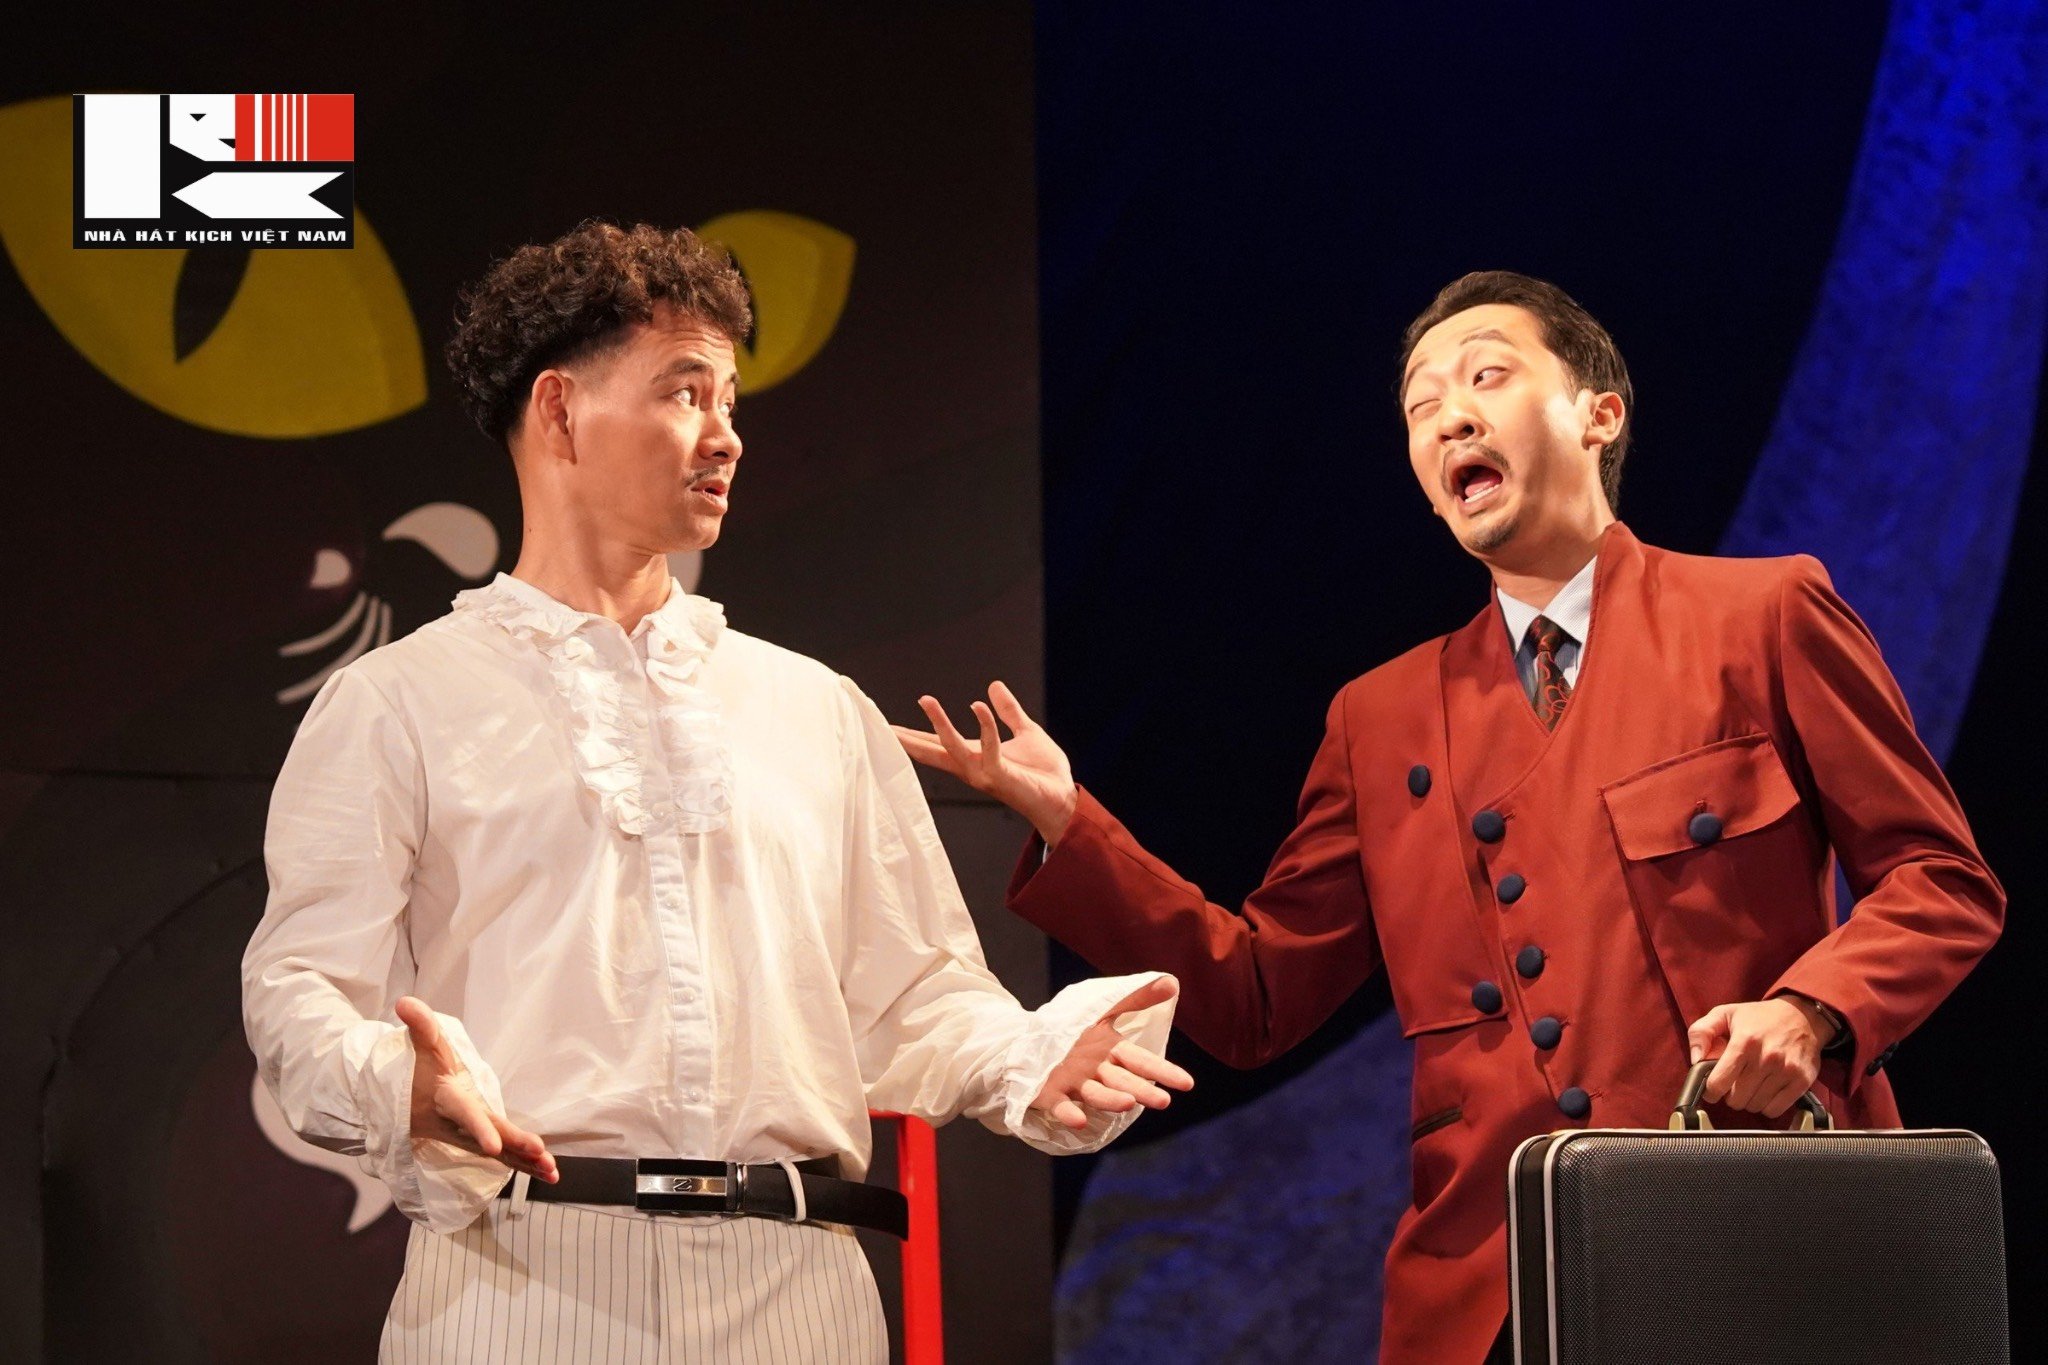 Nhà hát kịch Việt Nam ra mắt vở hài kịch kinh điển “Quan thanh tra”